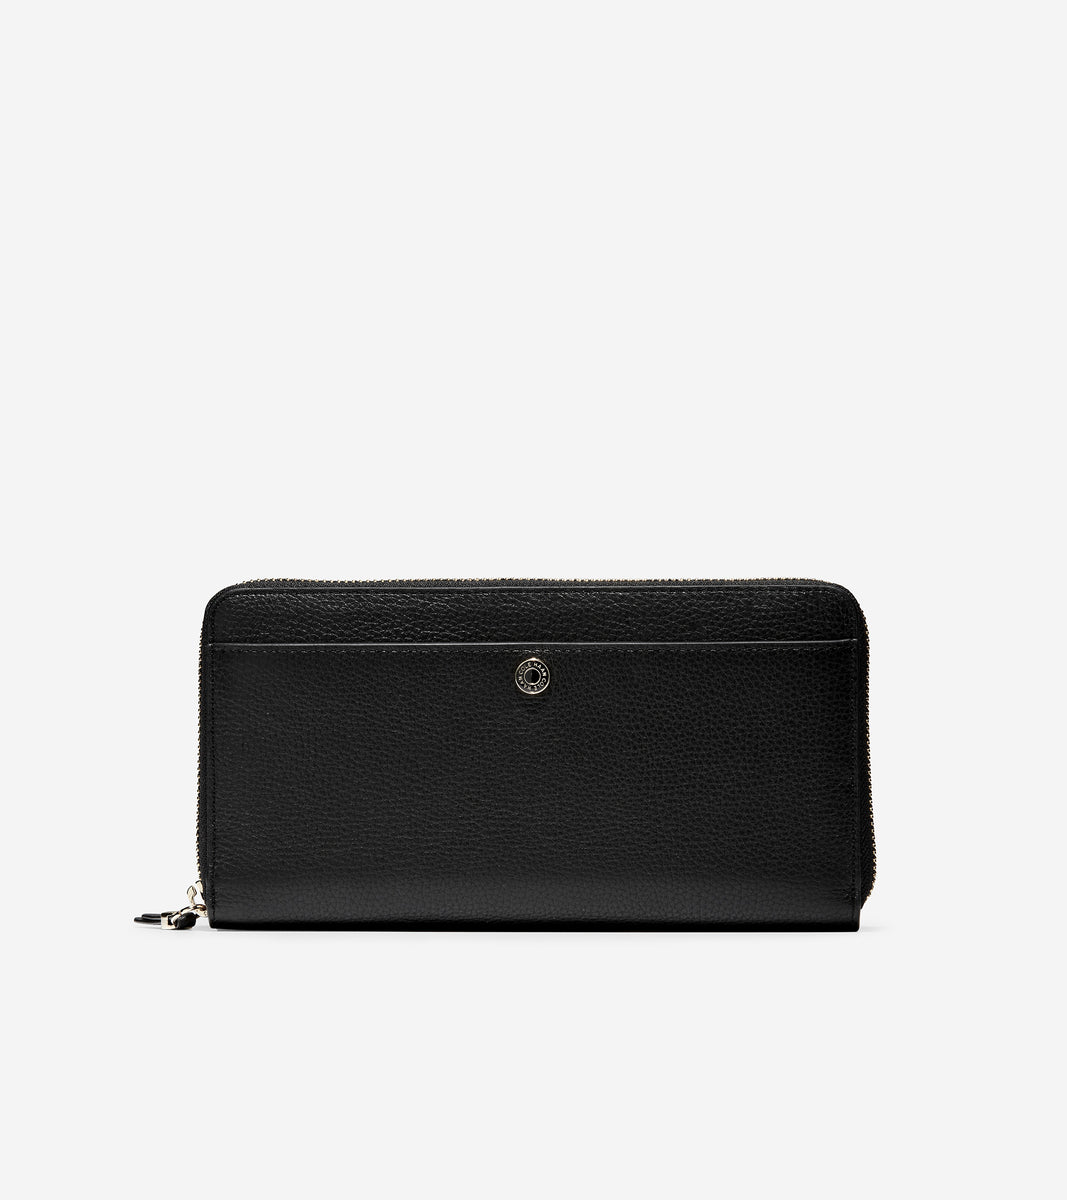 ColeHaan-GRANDSERIES Travel Wallet-u04472-Black Leather